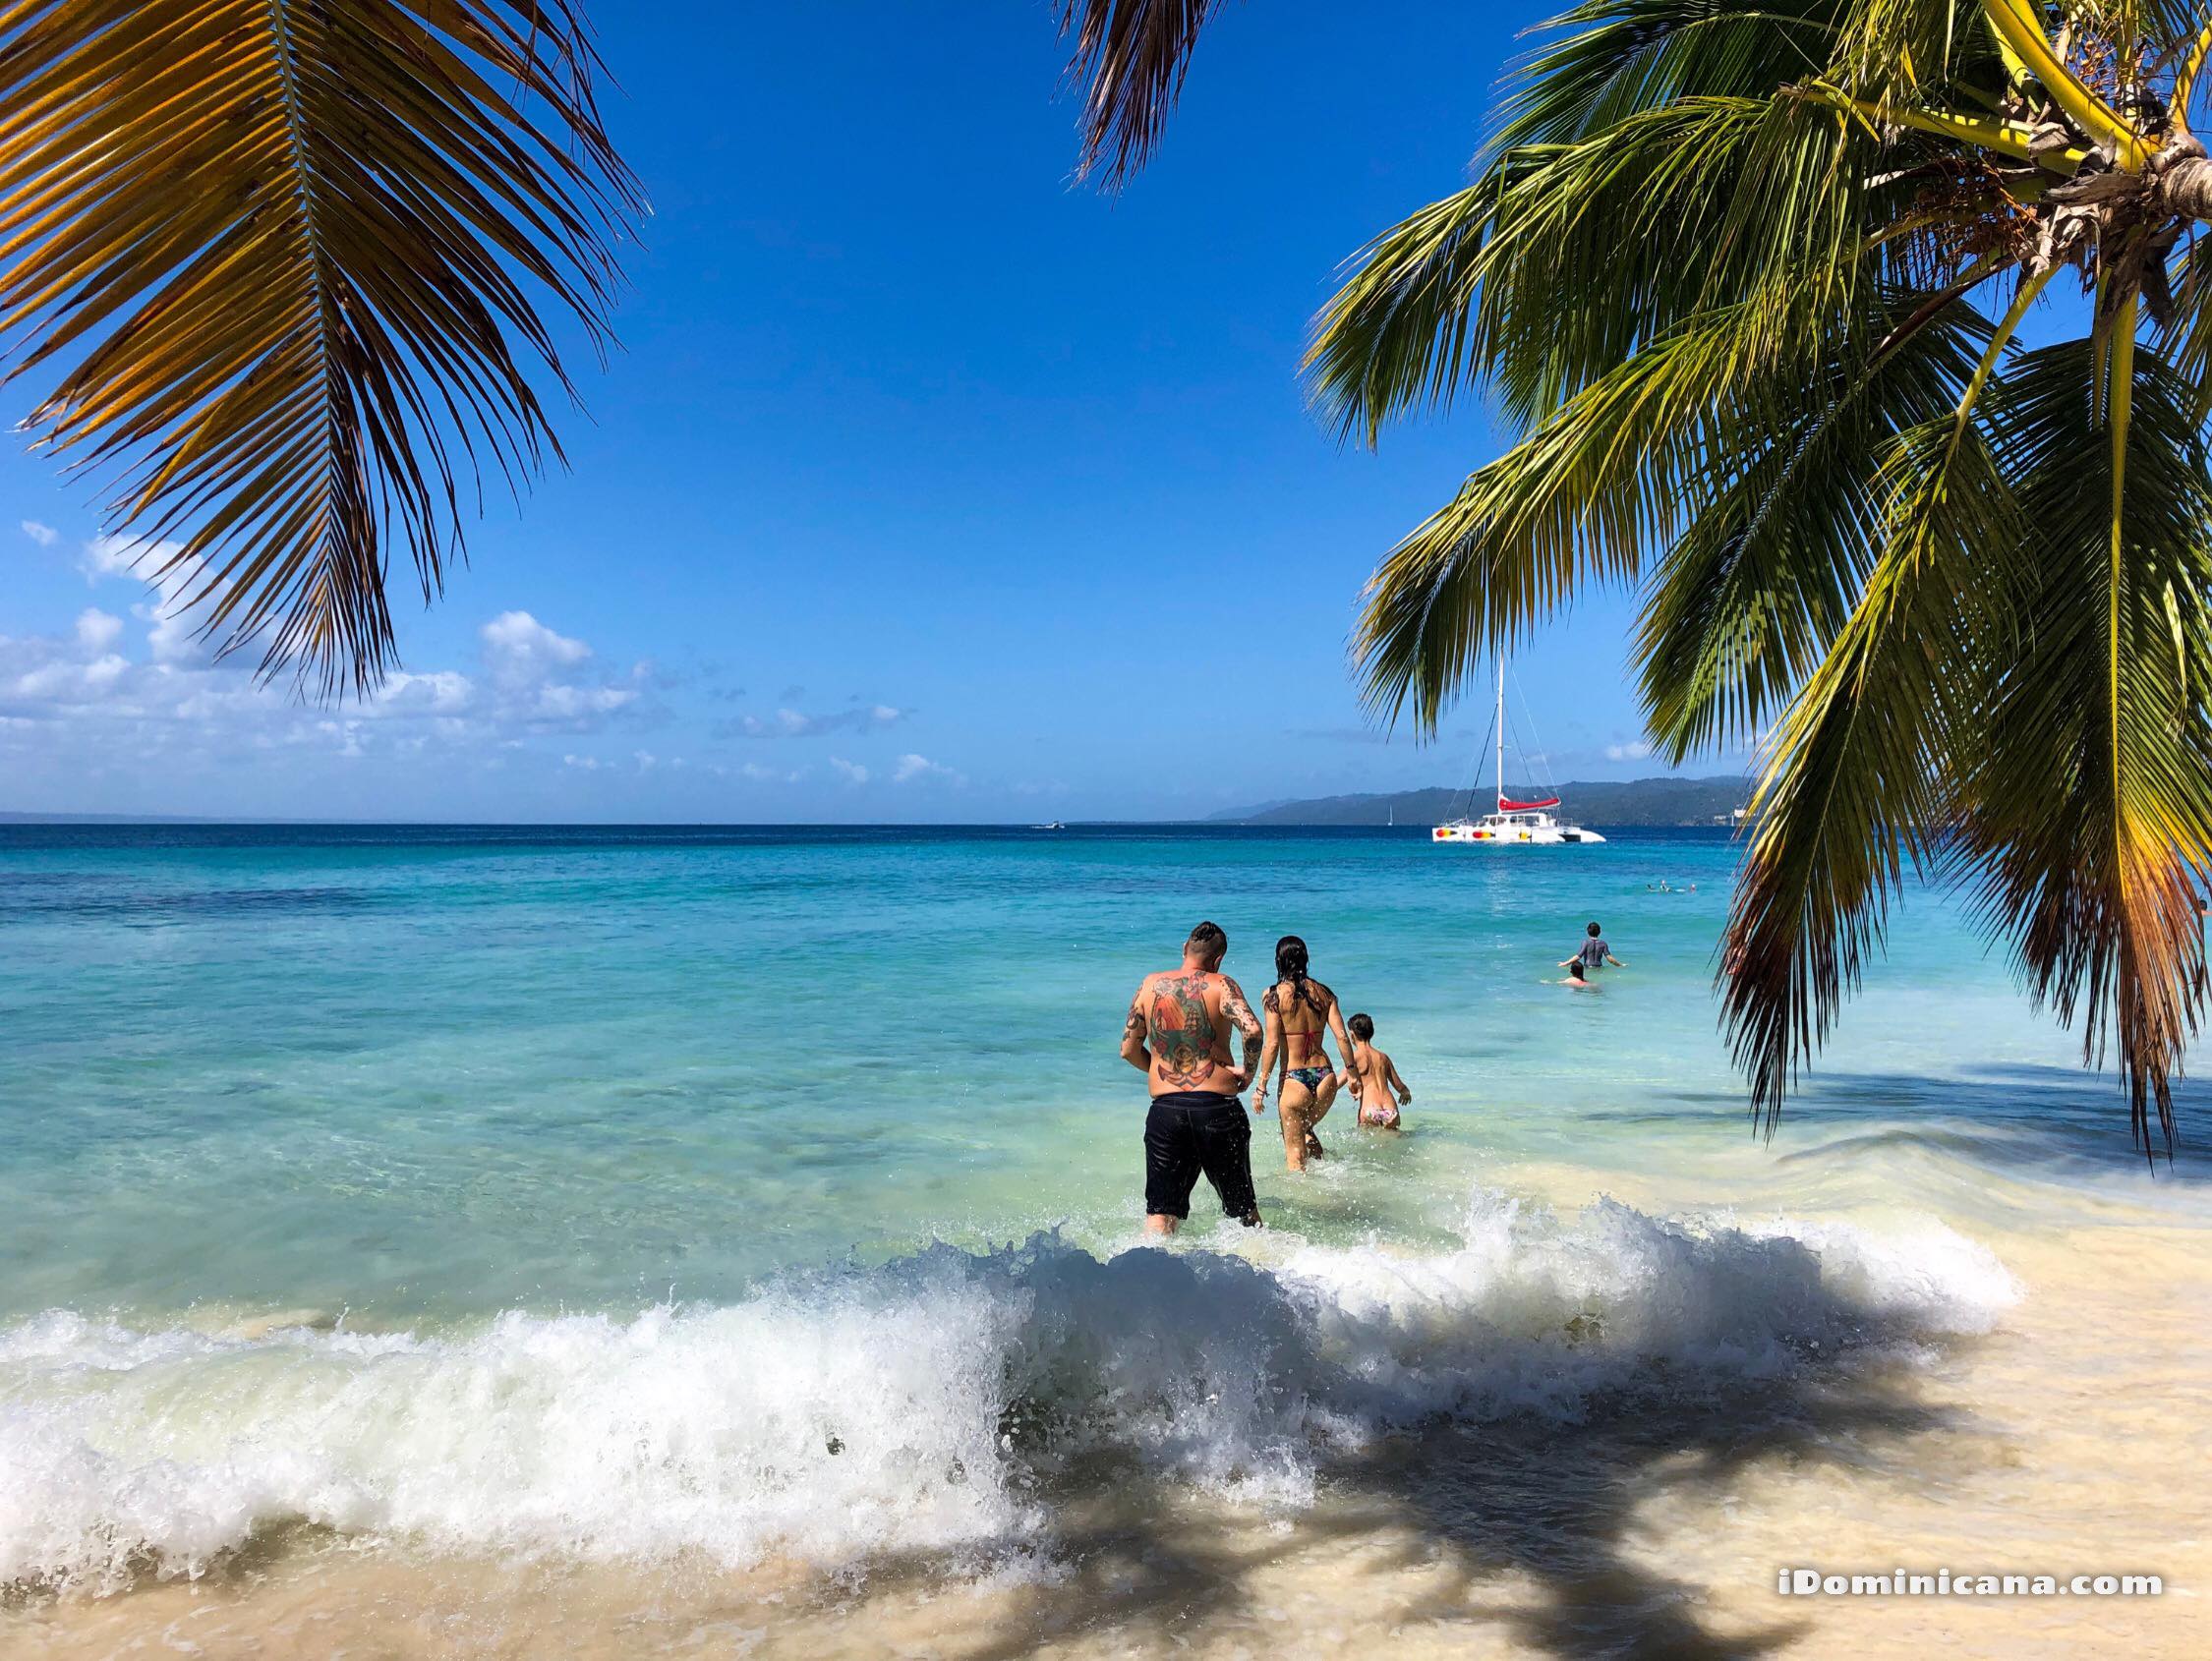 Погода в доминикане в октябре: температура воды и воздуха, особенности отдыха, стоит ли ехать в этот период